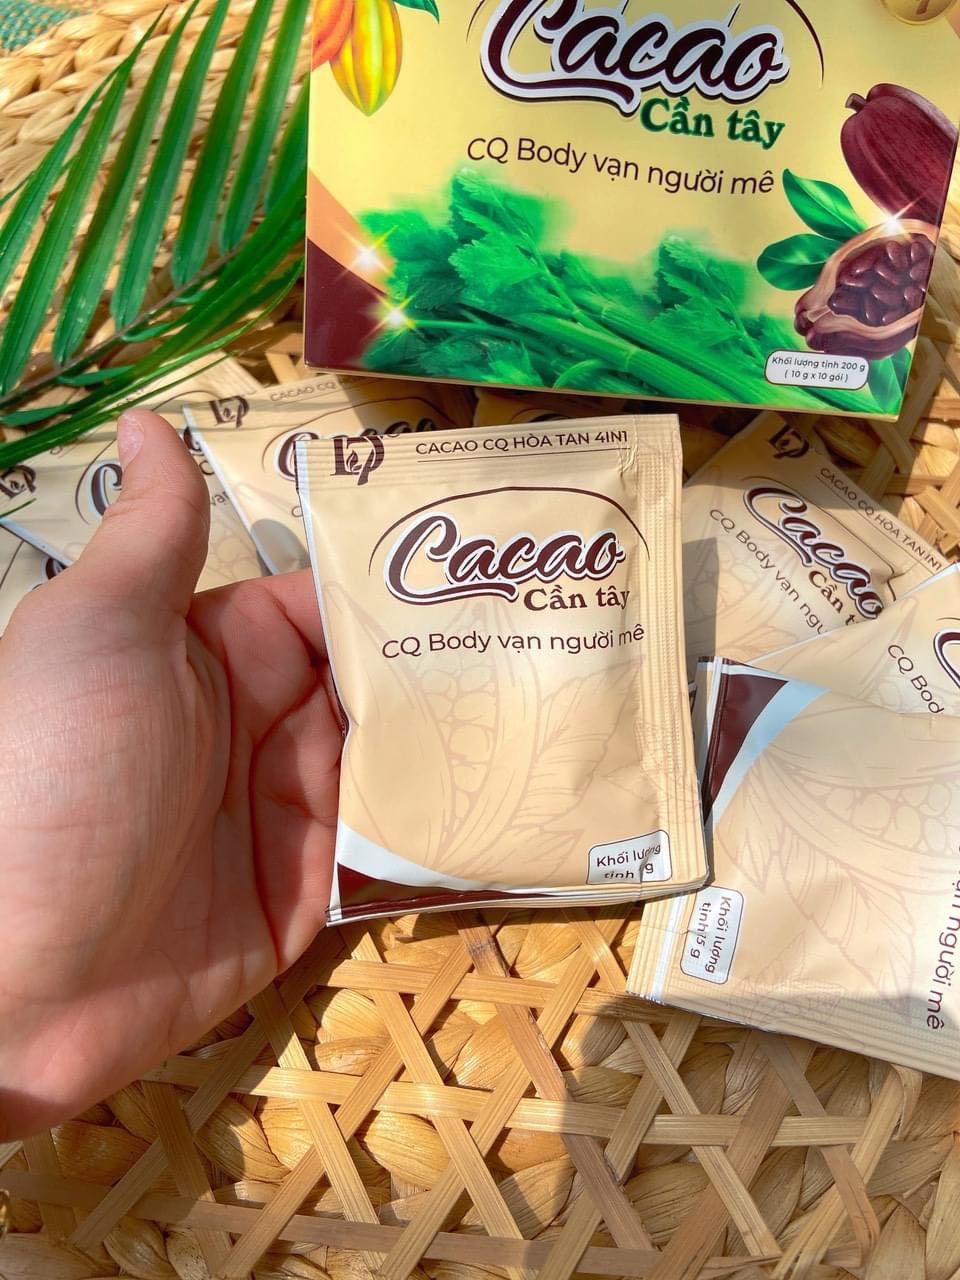 Combo 10 hộp Cacao cần tây hỗ trợ giảm cân CQ HOA TAN 4IN1 Thái Lan ( Chanel Châu )